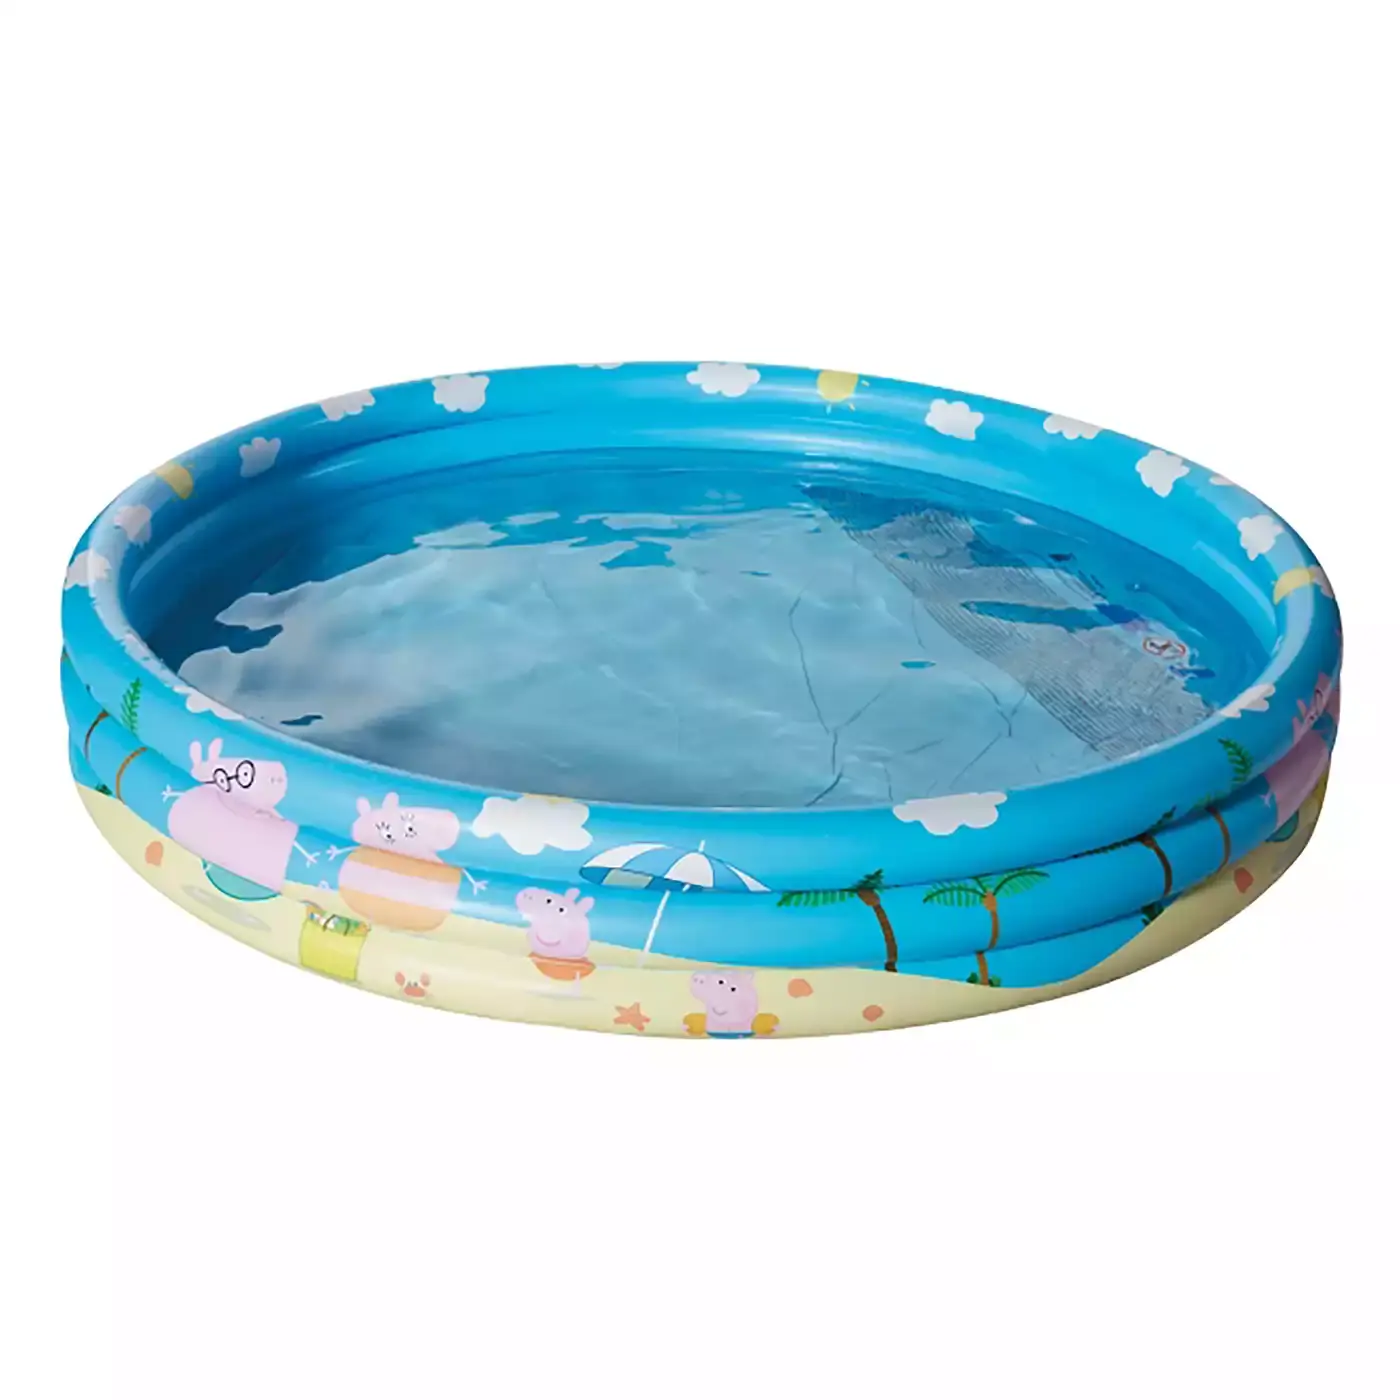 Peppa Pig 3-Ring-Pool 150x25cm HAPPY PEOPLE Blau 2000578442101 1